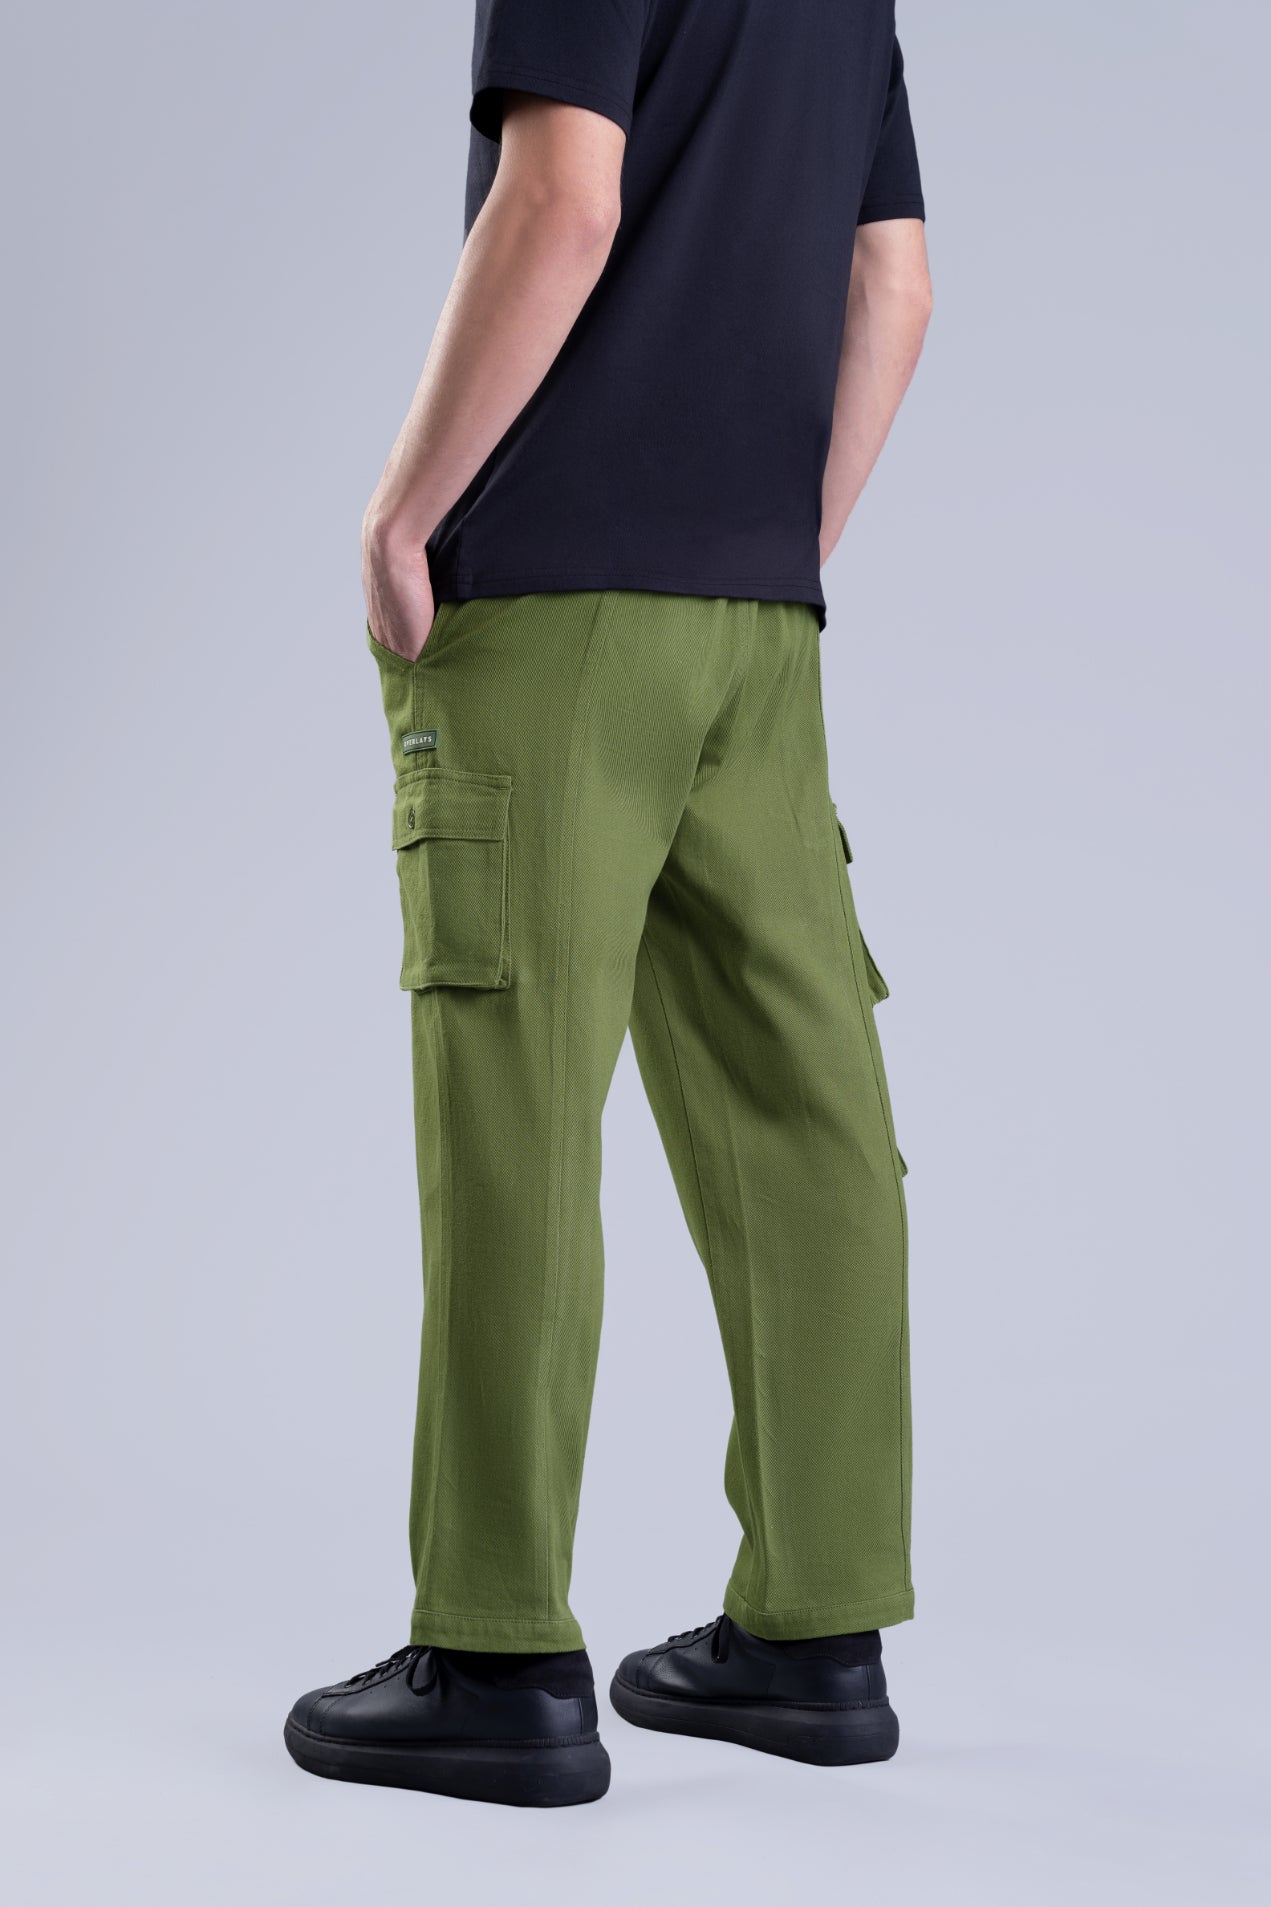 Olive Green Men's Cargo Pants